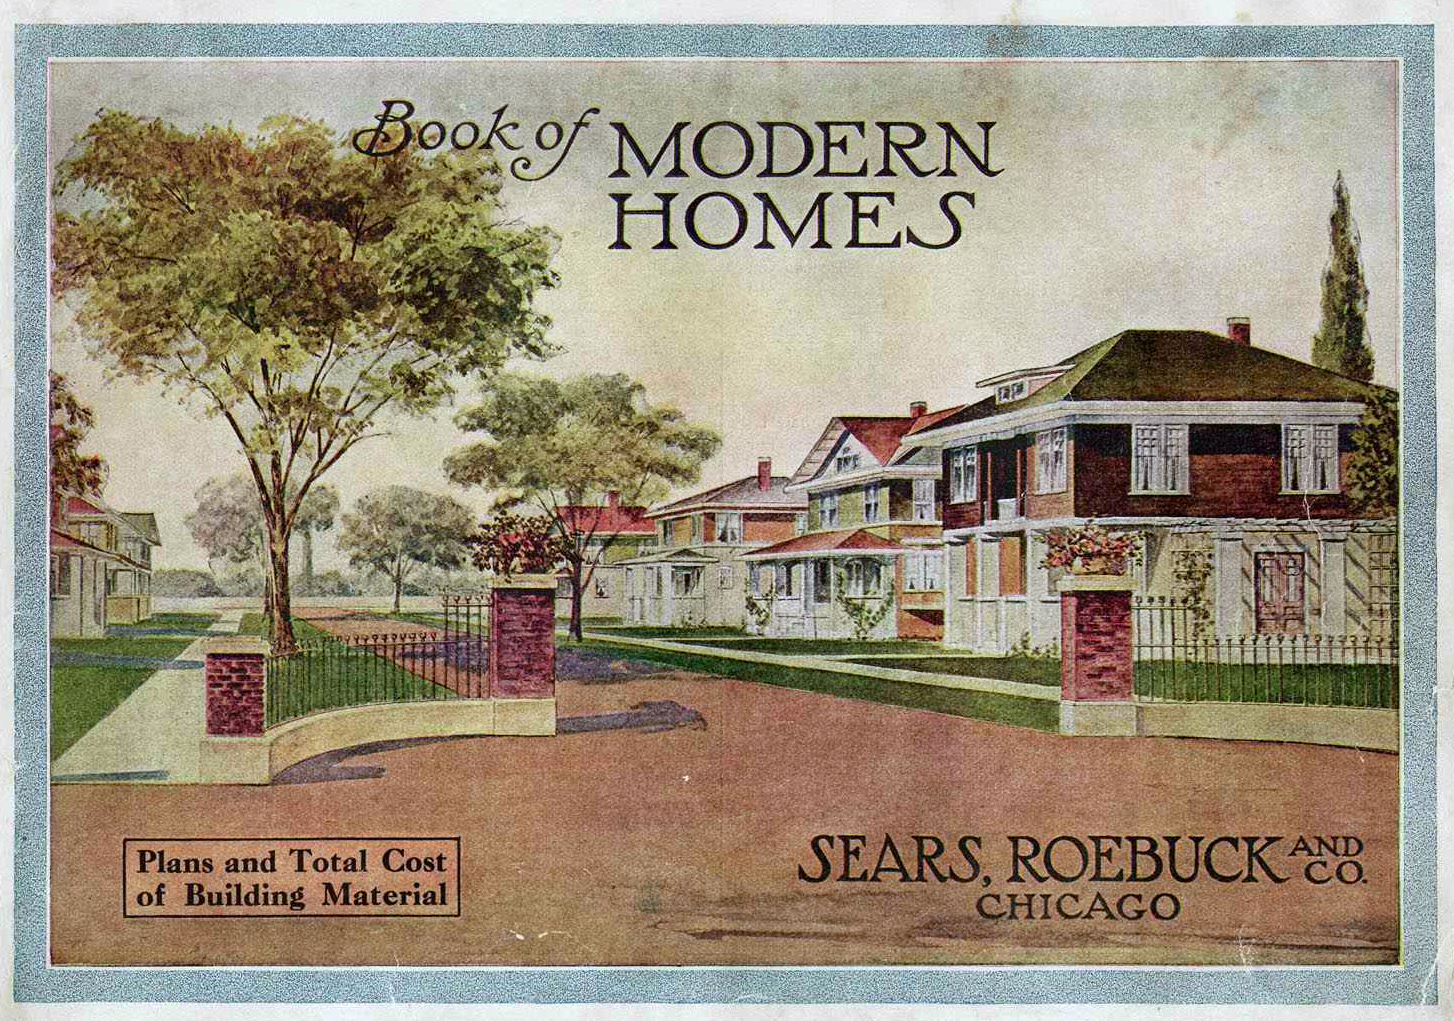 Sears Modern Homes